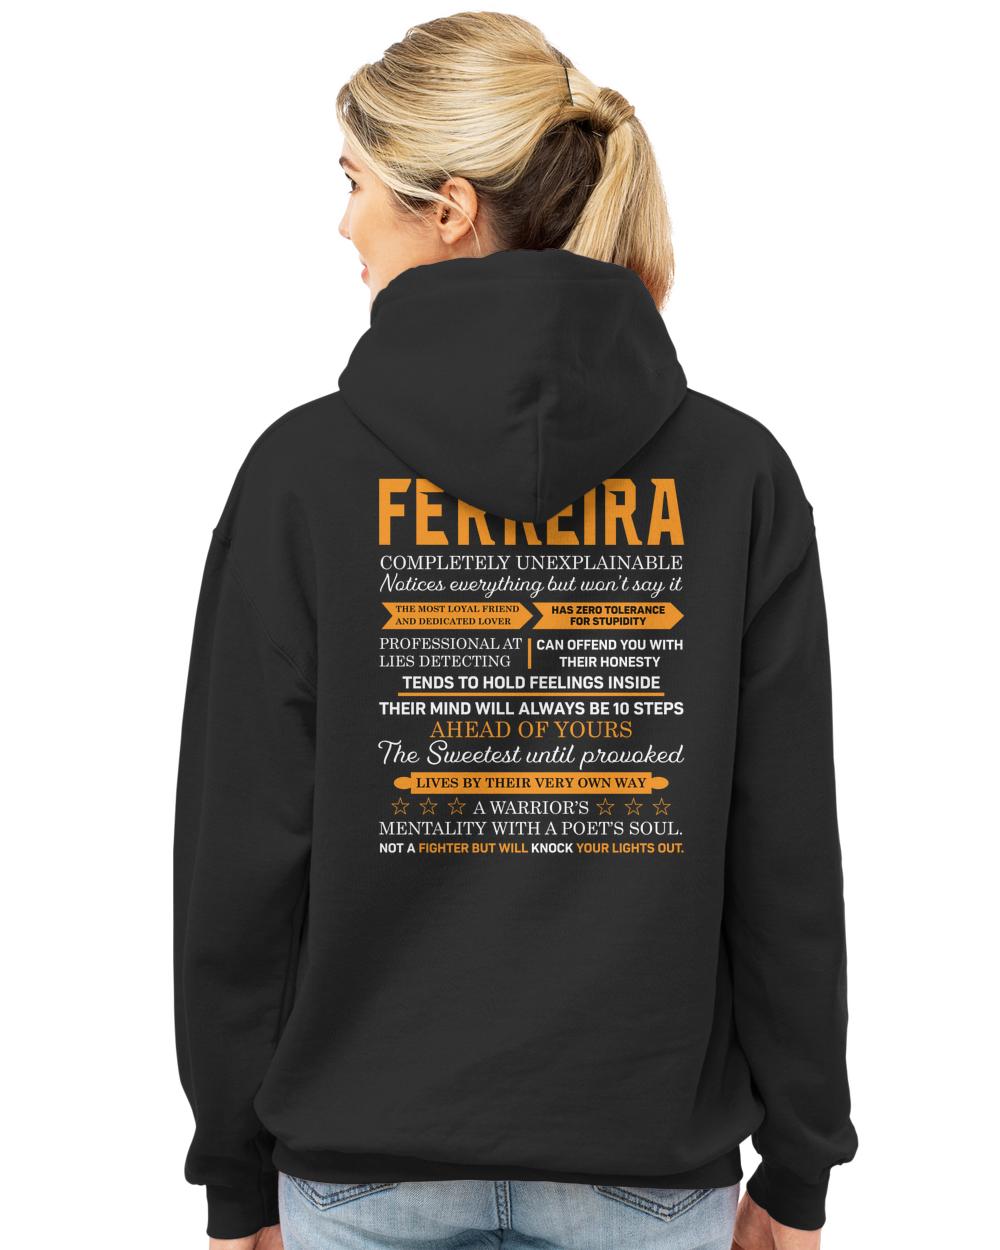 FERREIRA-13K-N1-01